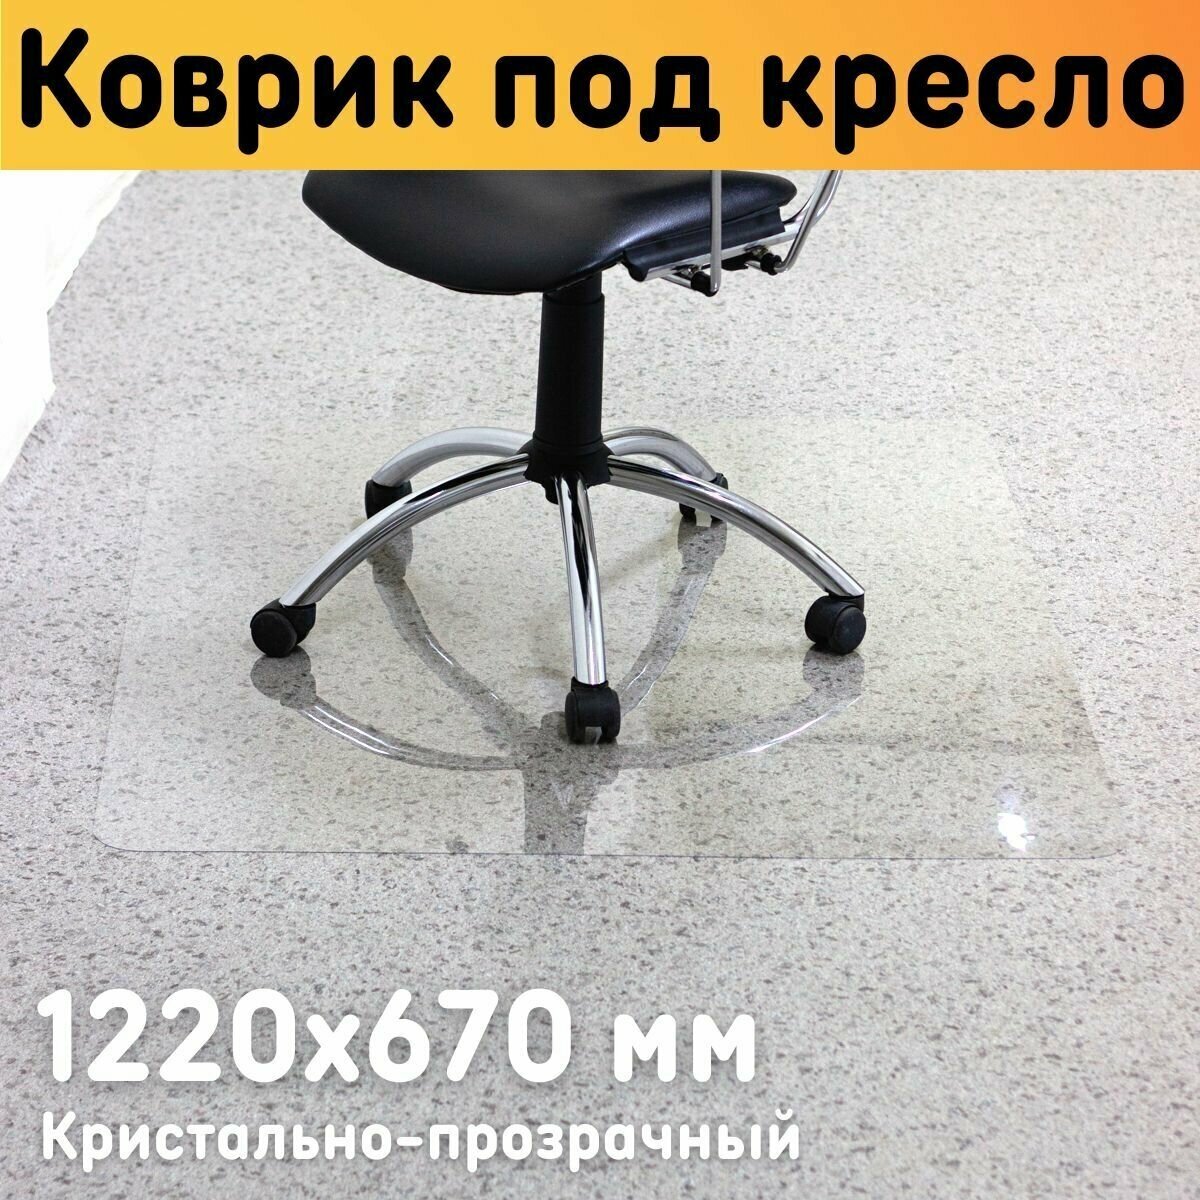 Защитный коврик под кресло 1220х670 мм, толщина материала 0,7 мм / Коврик под кресло прозрачный